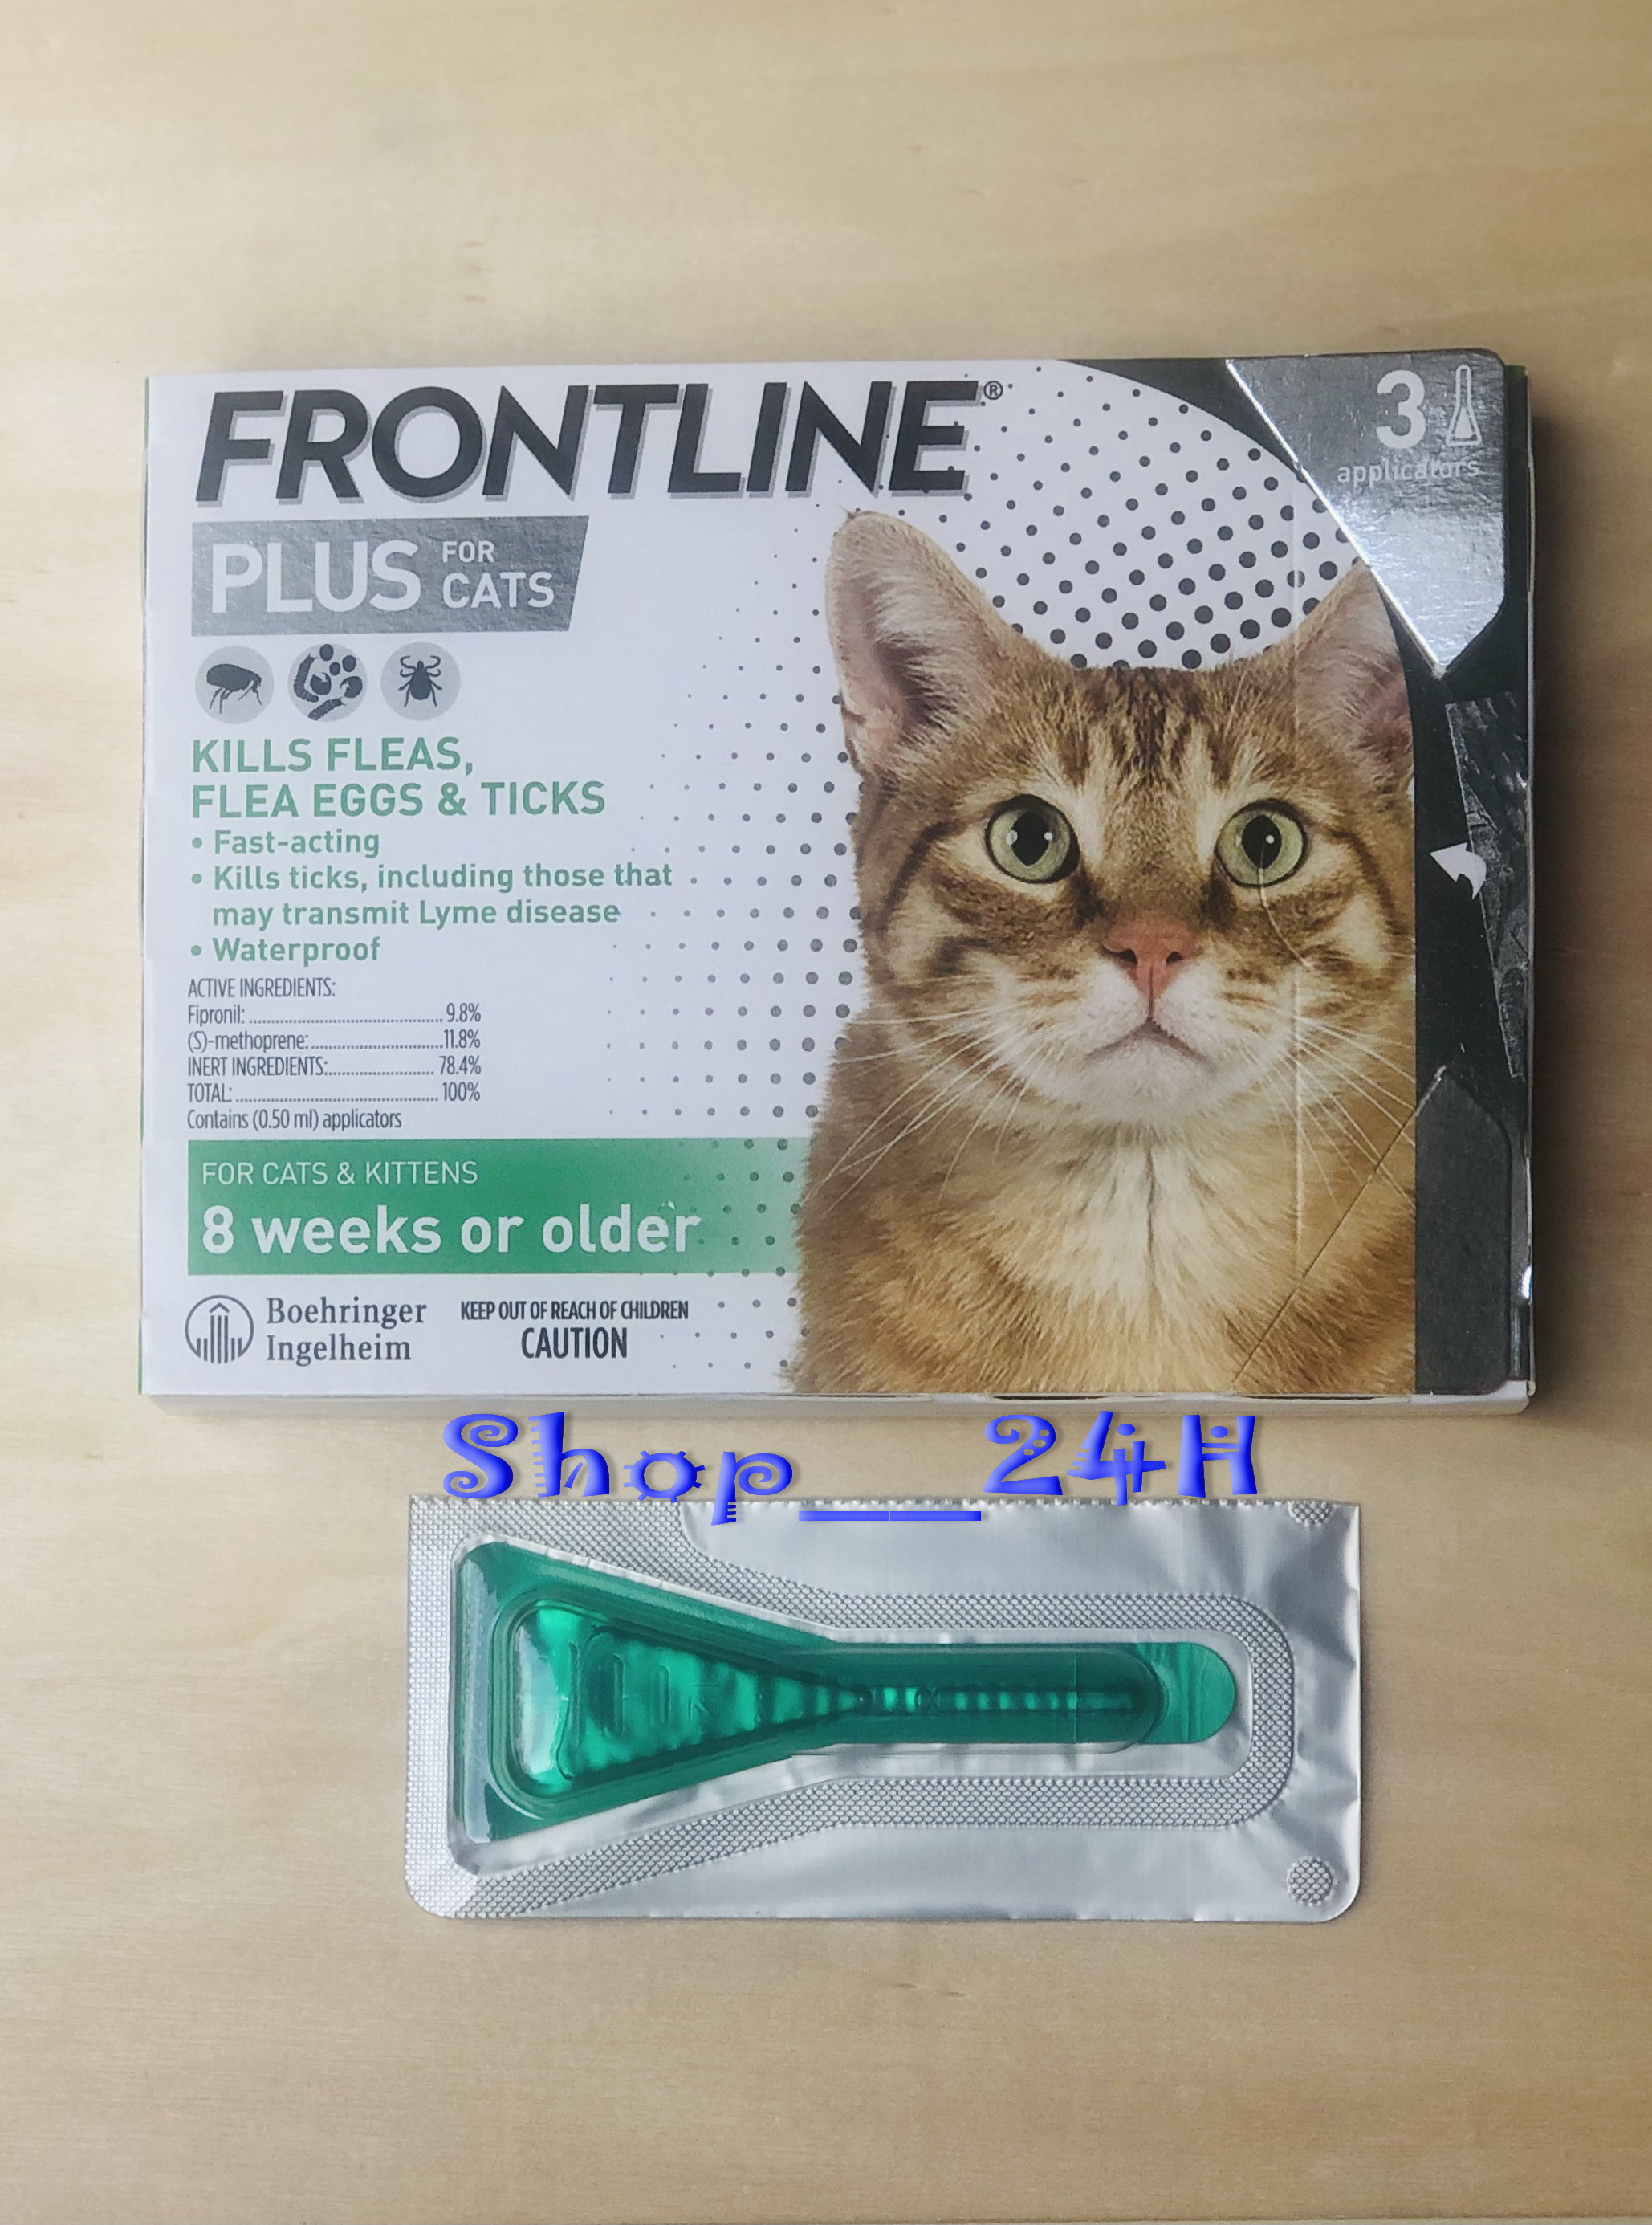 Thuốc nhỏ gáy trị ve rận cho mèo Frontline (1 tuýp)